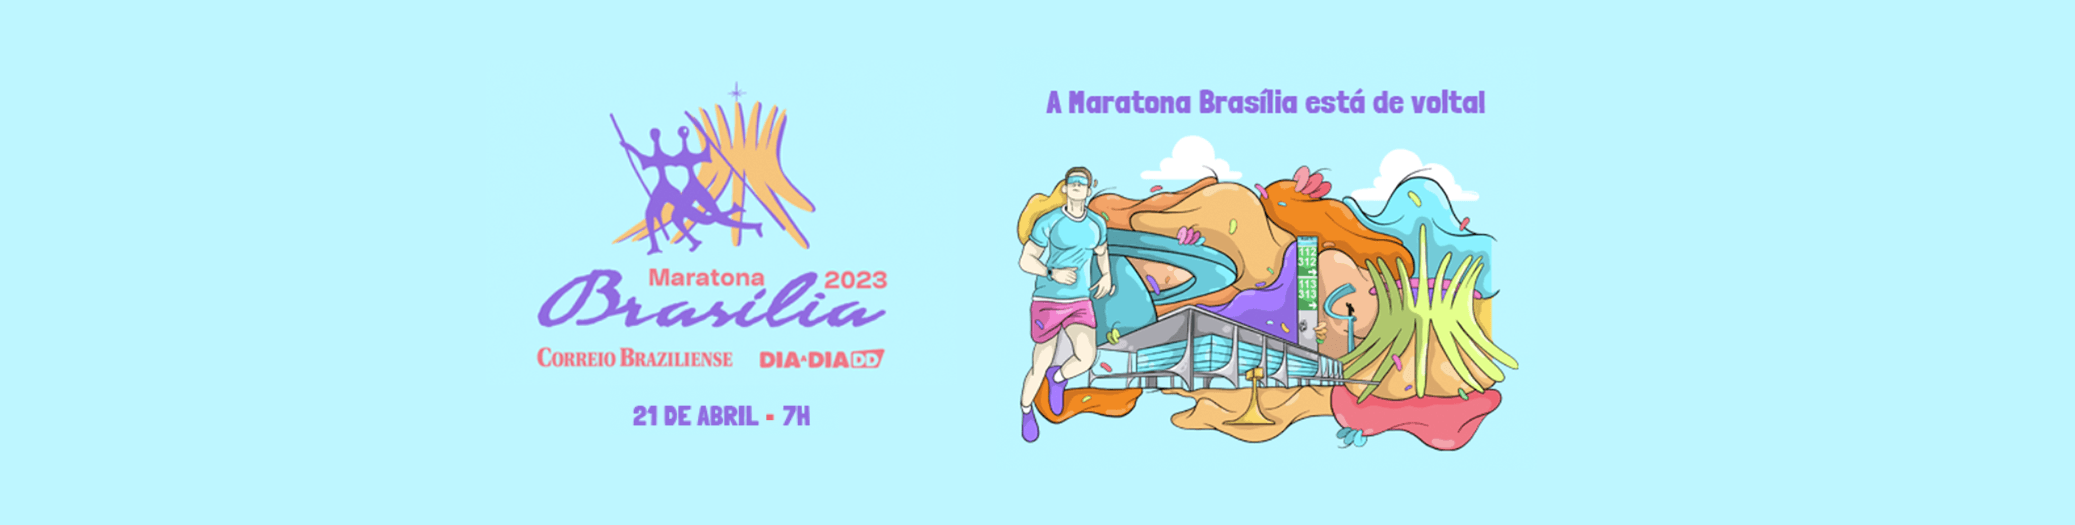 Você vai ganhar inscrições para a Maratona Brasília, dia 21/04